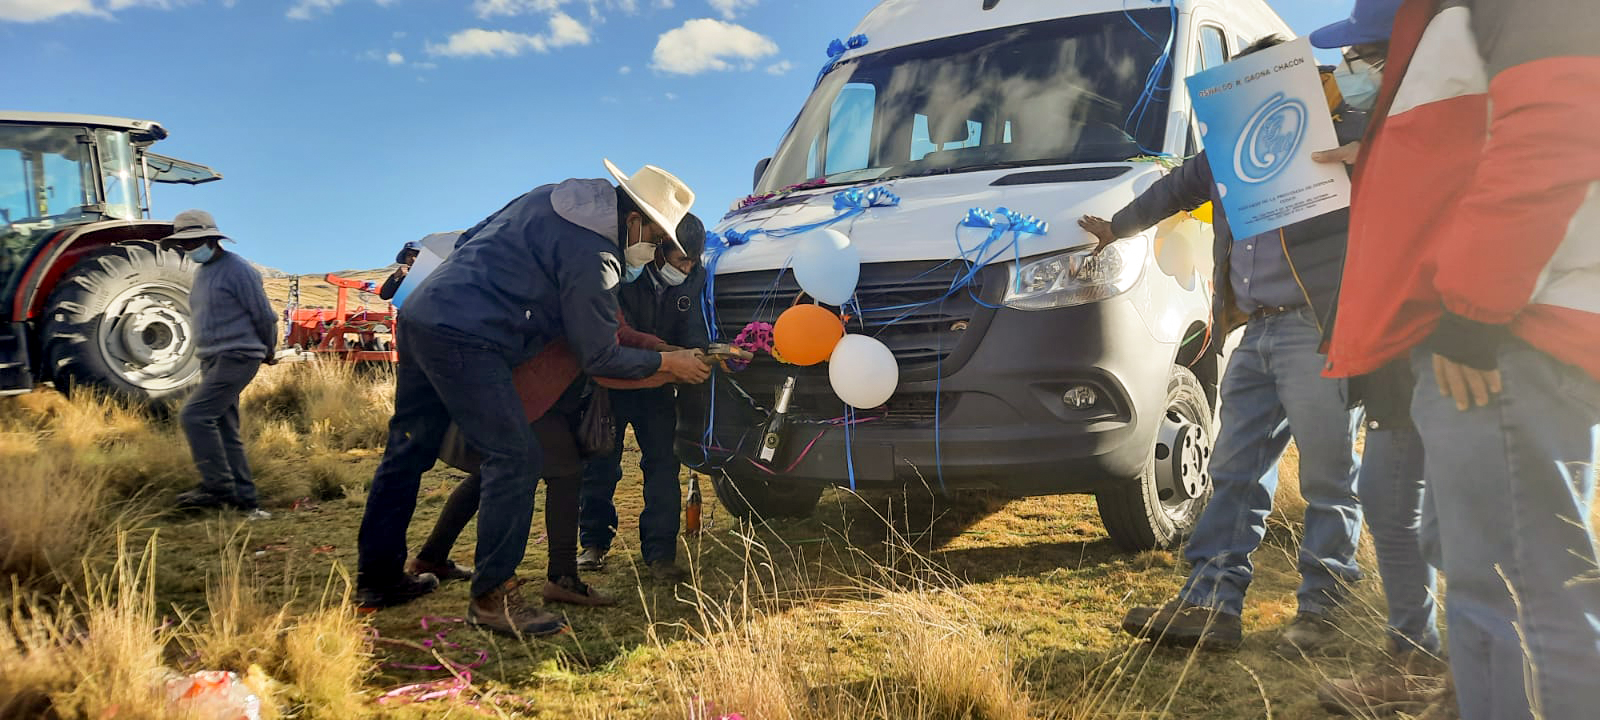 Antapaccay entregó vehículo de transporte y tractor agrícola equipado a la comunidad Alto Huarca